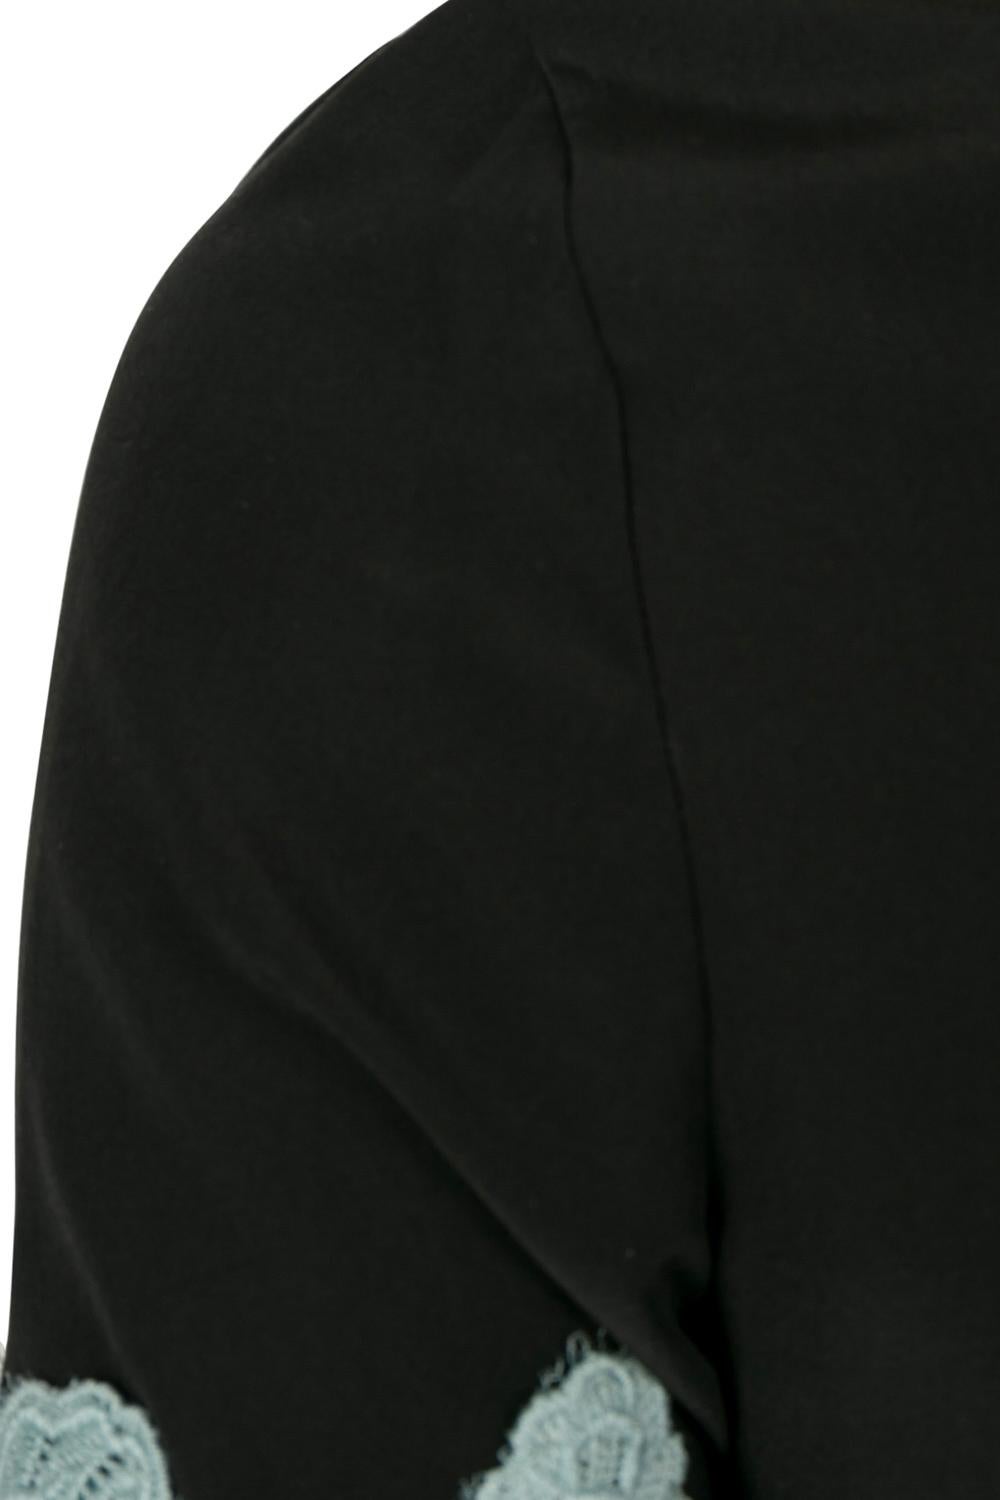 Dolce & Gabbana Black Silk Lace Applique Detail Short Sleeve Blouse S 2